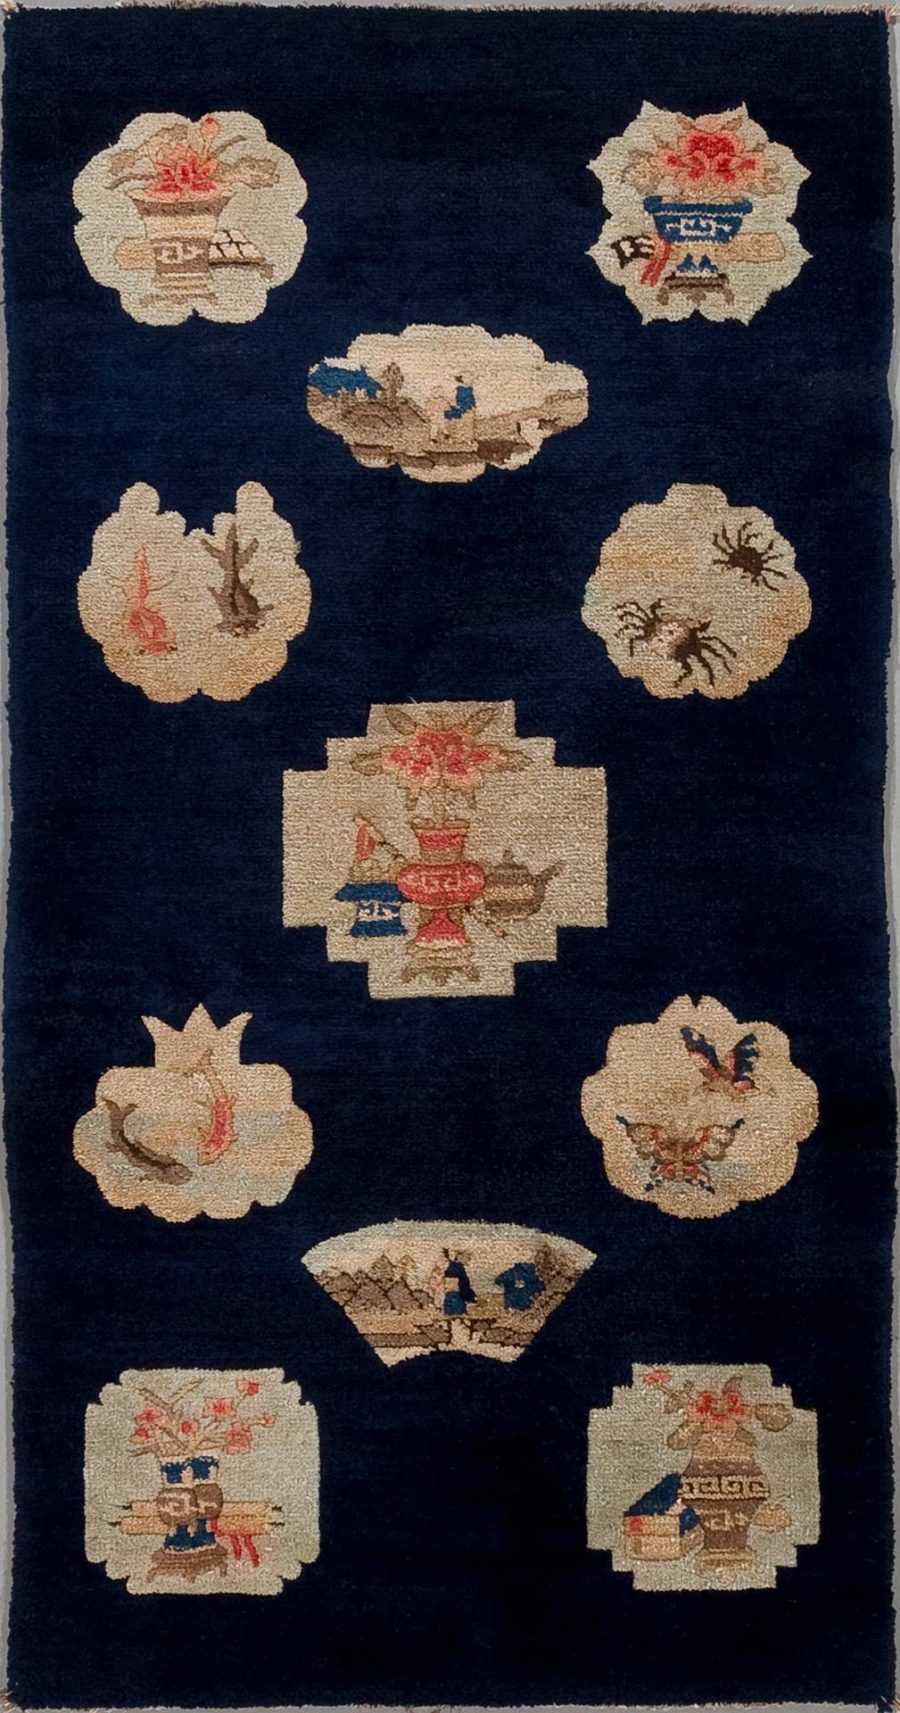 Antik wirkender Teppich mit dichtem Marineblaufeld und mehreren eingewebten traditionellen asiatischen Motiven in Beige- und Rottönen, darunter Vasen und Blumenarrangements, umgeben von einem schlichten, dunklen Rand.